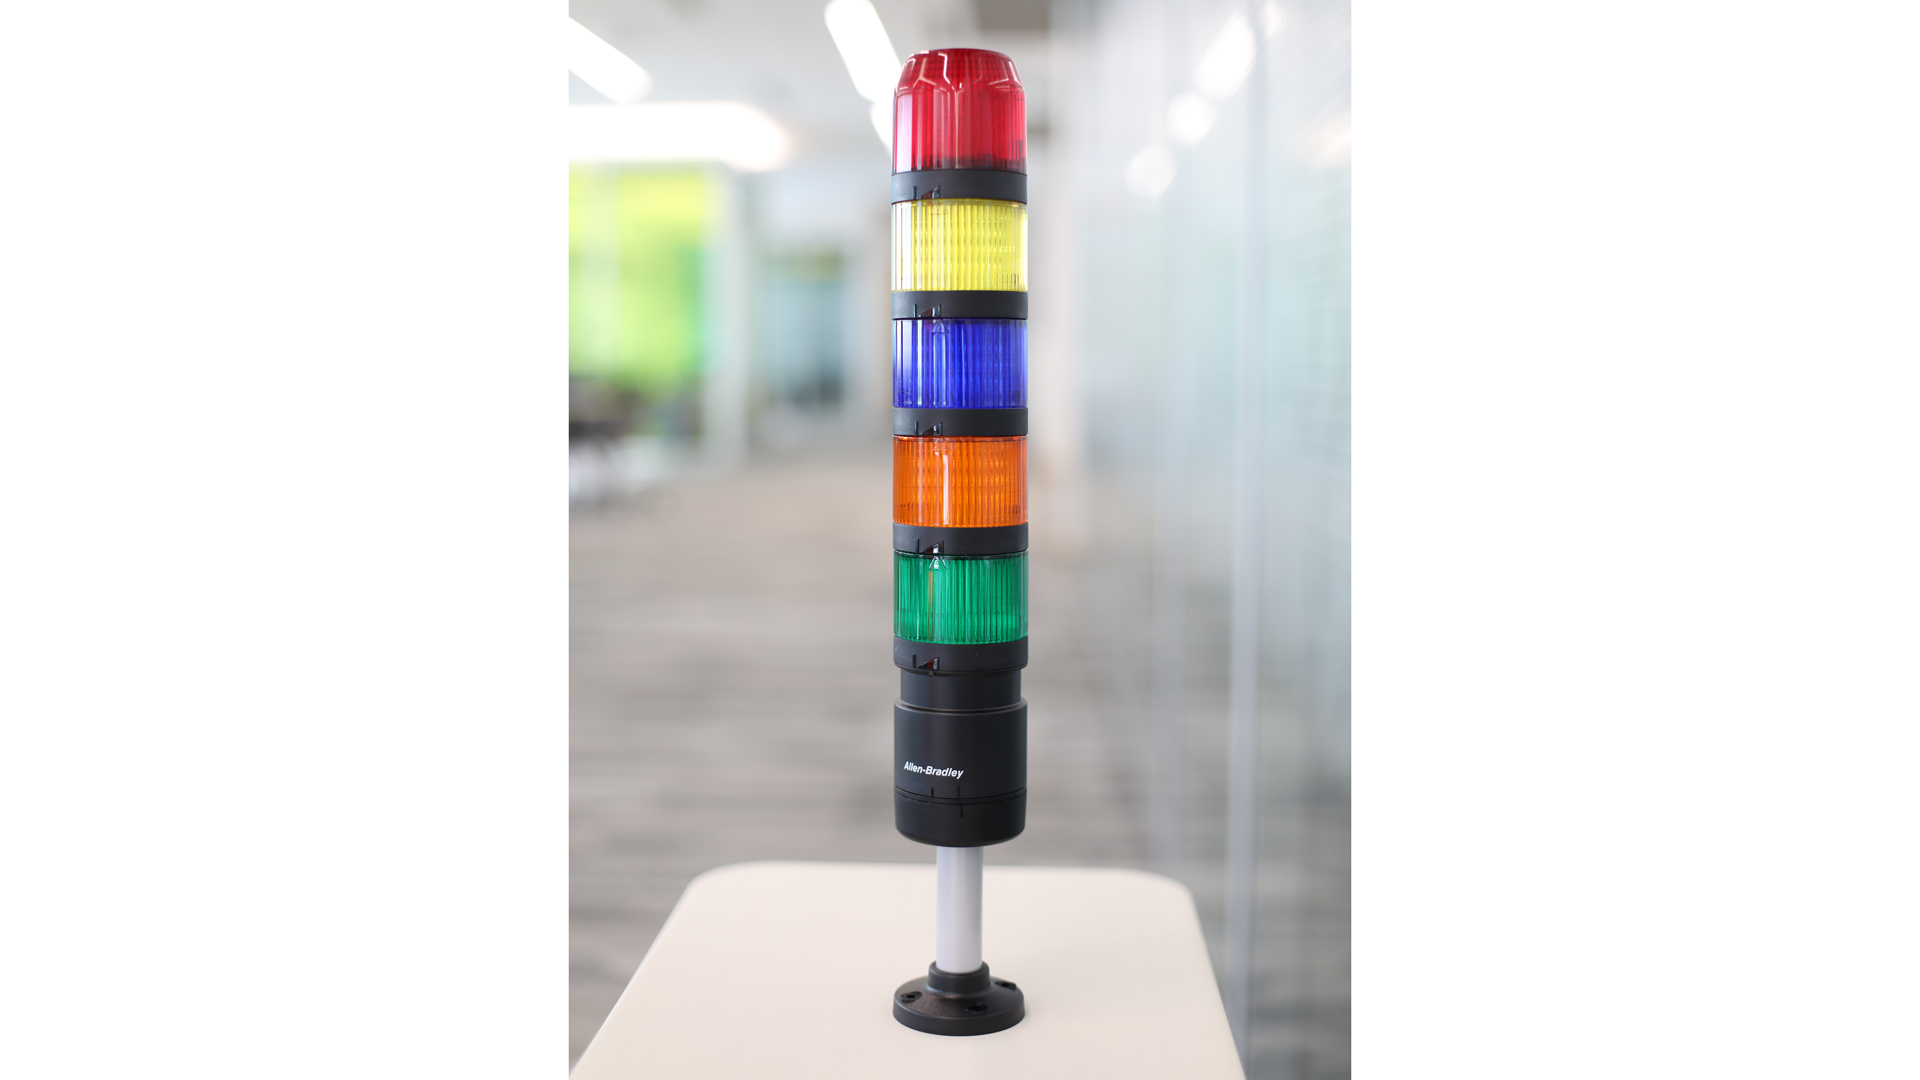 桌上的 IO-Link 塔灯 - 从上到下 - 红色、黄色、蓝色、琥珀色和绿色不亮指示灯模块，黑色柱式安装 